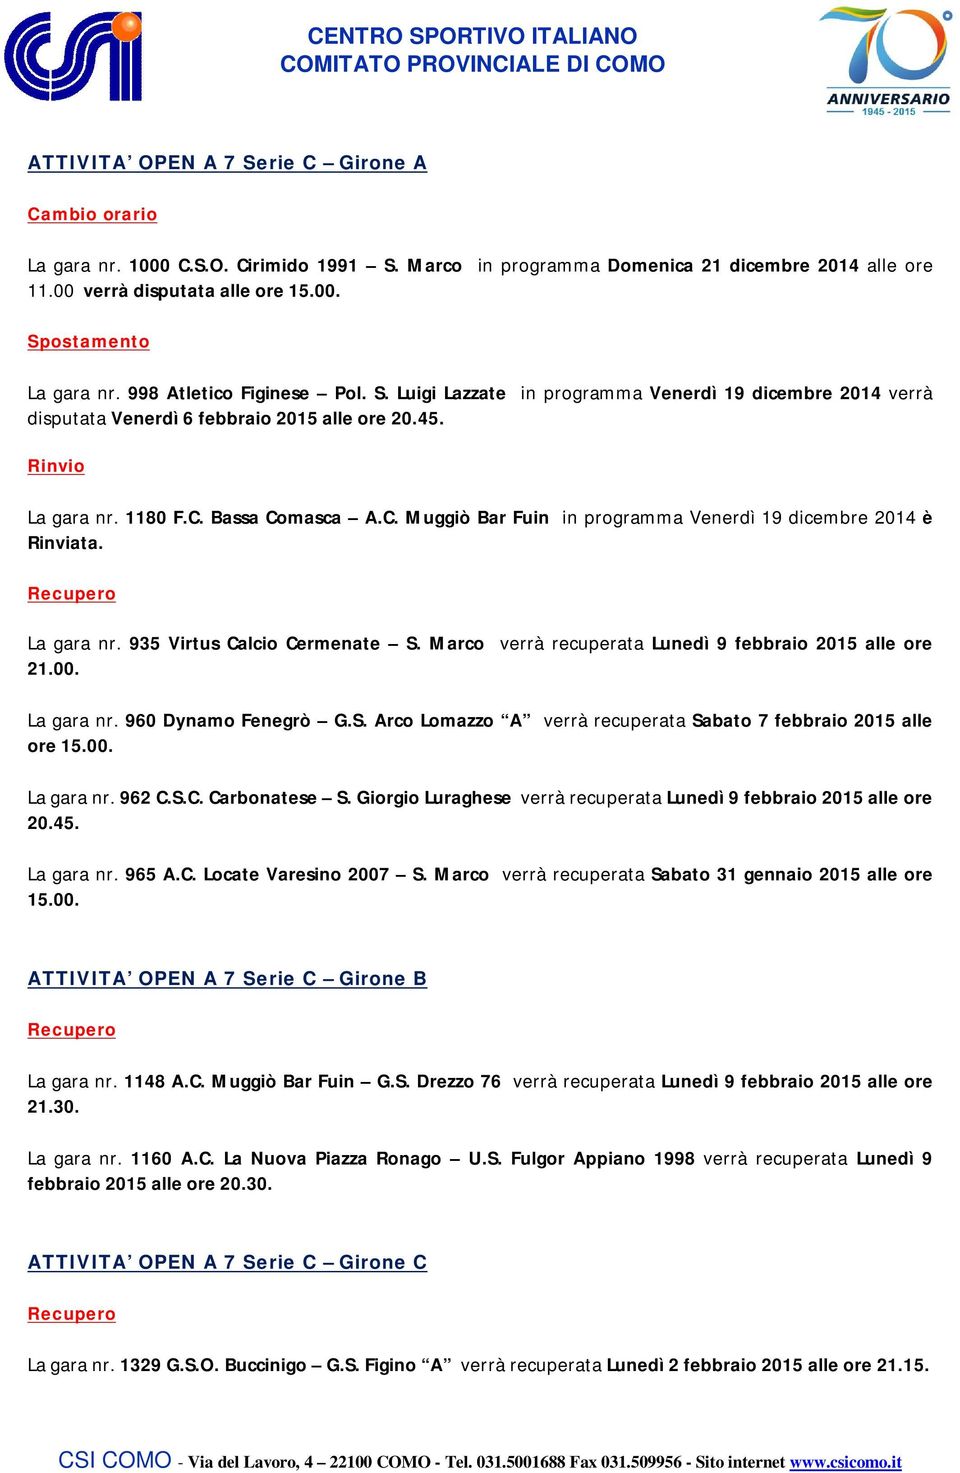 Bassa Comasca A.C. Muggiò Bar Fuin in programma Venerdì 19 dicembre 2014 è Rinviata. La gara nr. 935 Virtus Calcio Cermenate S. Marco verrà recuperata Lunedì 9 febbraio 2015 alle ore 21.00.